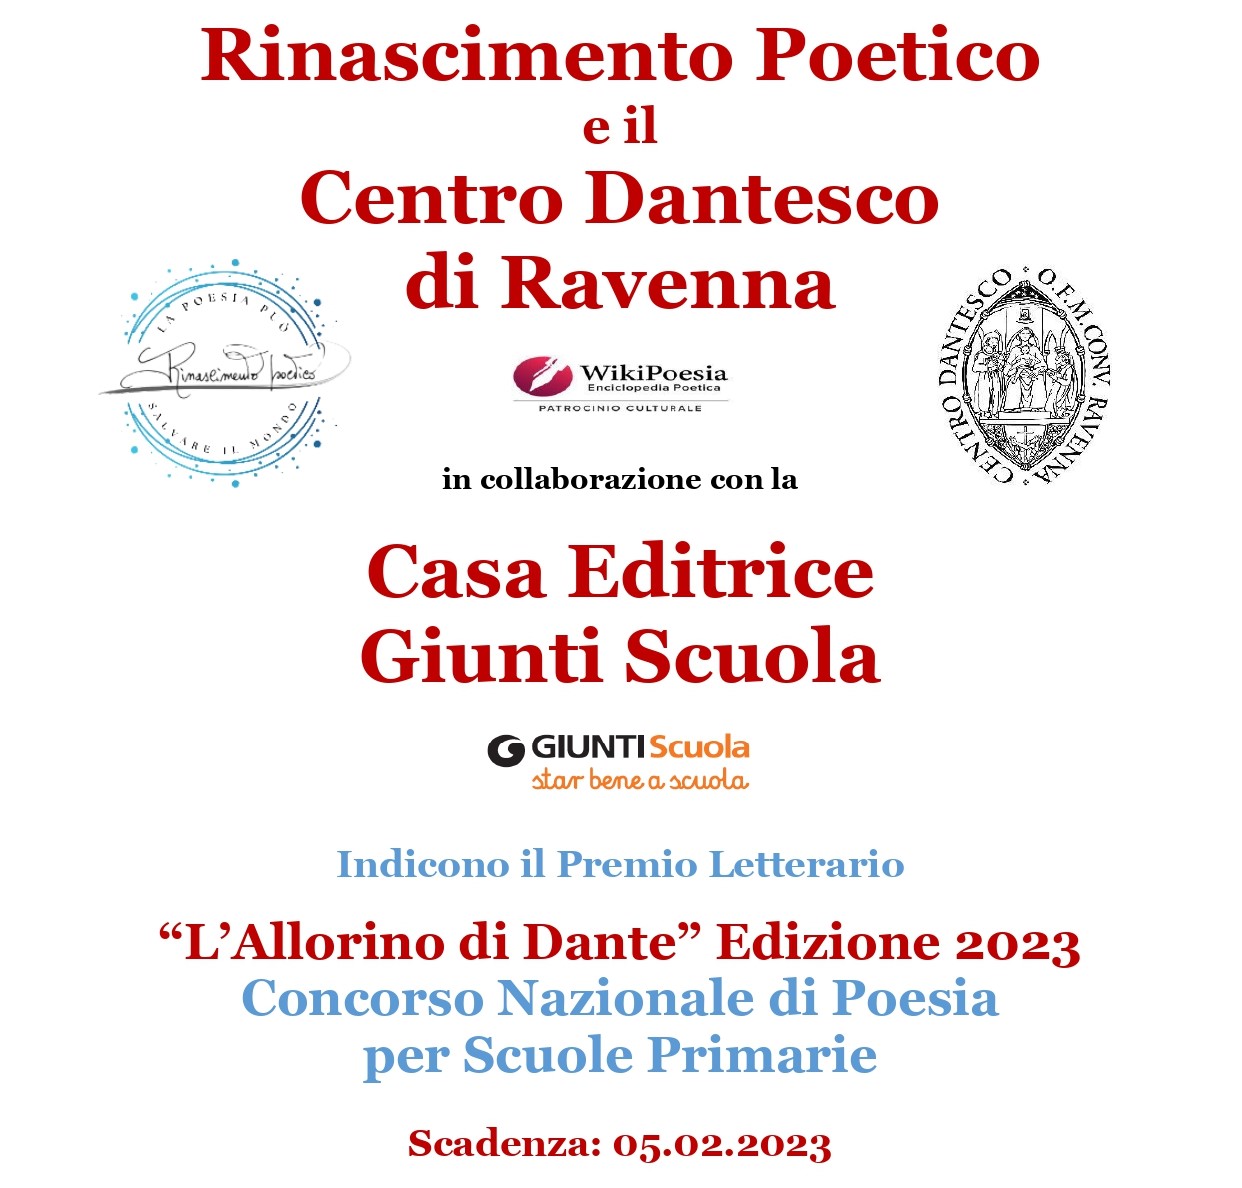 “L’Allorino di Dante” Edizione 2023